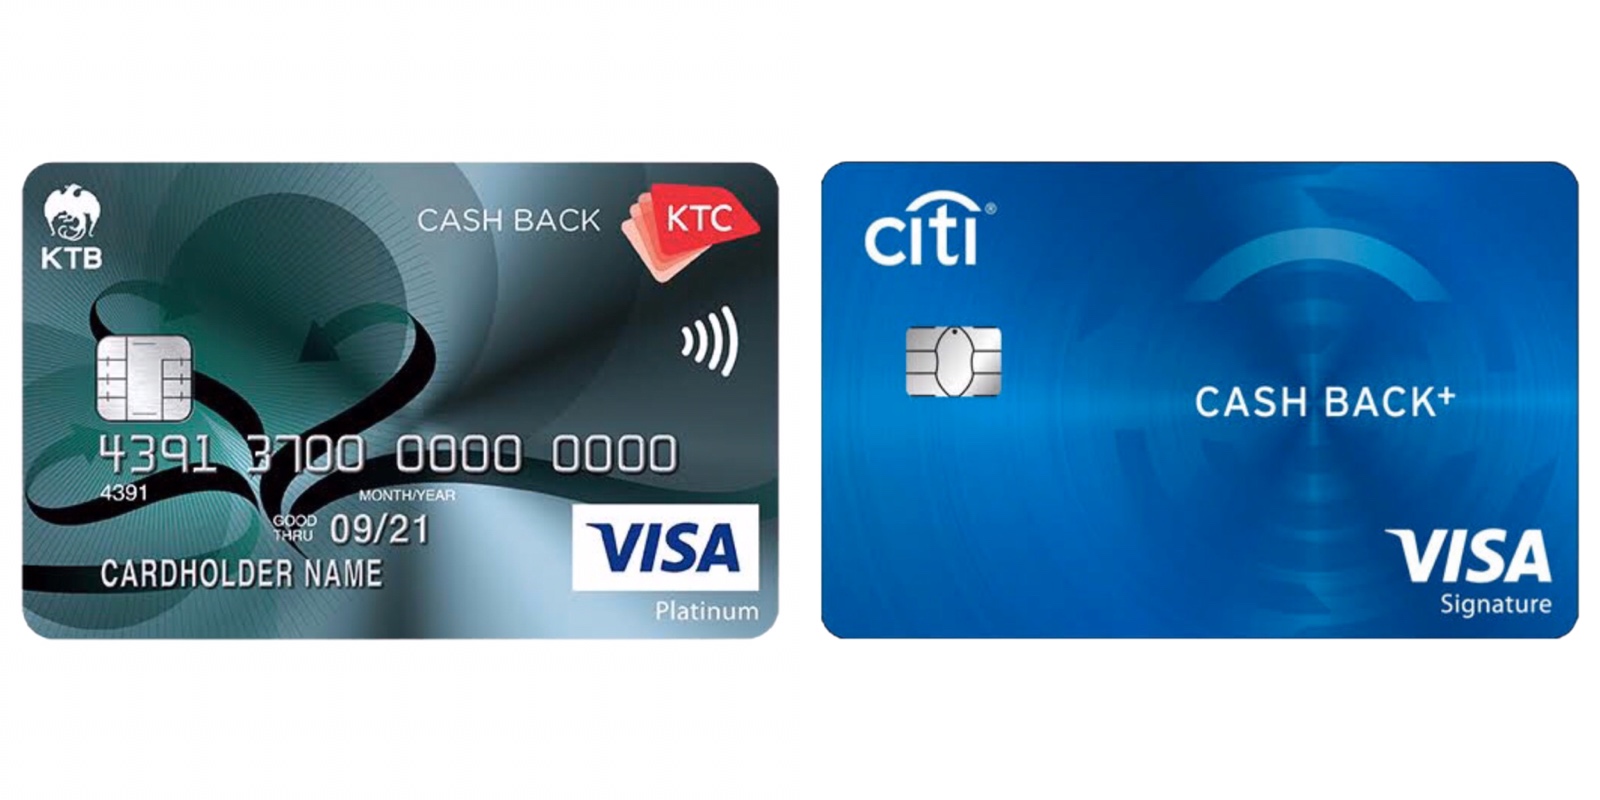 เข้ามาช่วยเลือก,ช่วยโหวด,แสดงความคิดเห็น,รีวิว,เปรียบเทียบ บัตรเครดิตแบบCashback  ของ Ktc กับ Citi Bank หน่อยครับ!! - Pantip